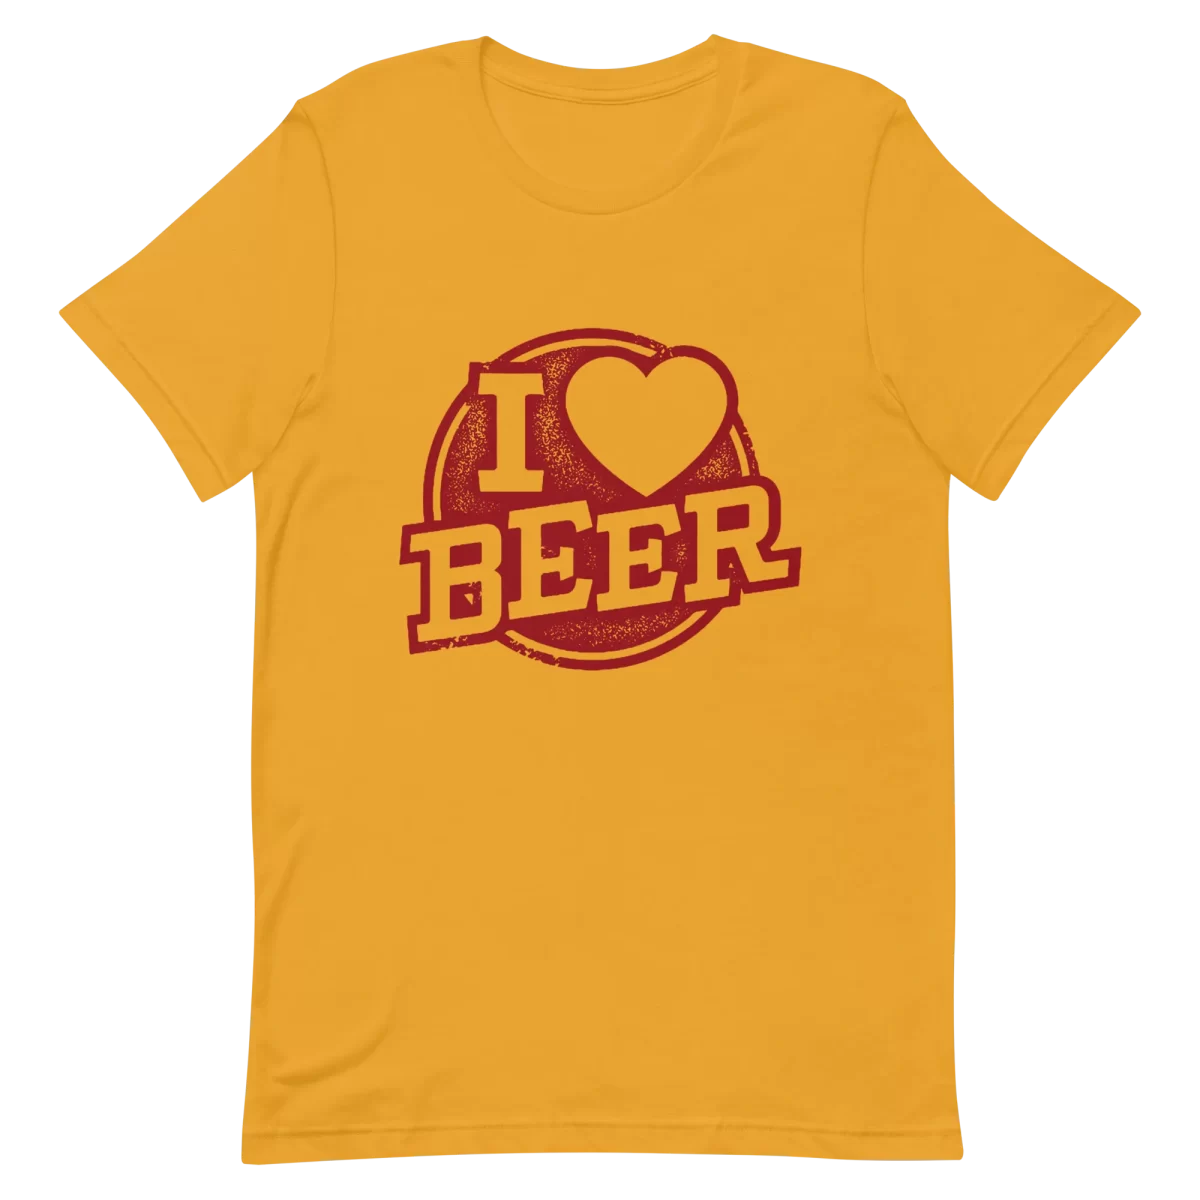 Unisex T-Shirt - I Love Beer - Mustard